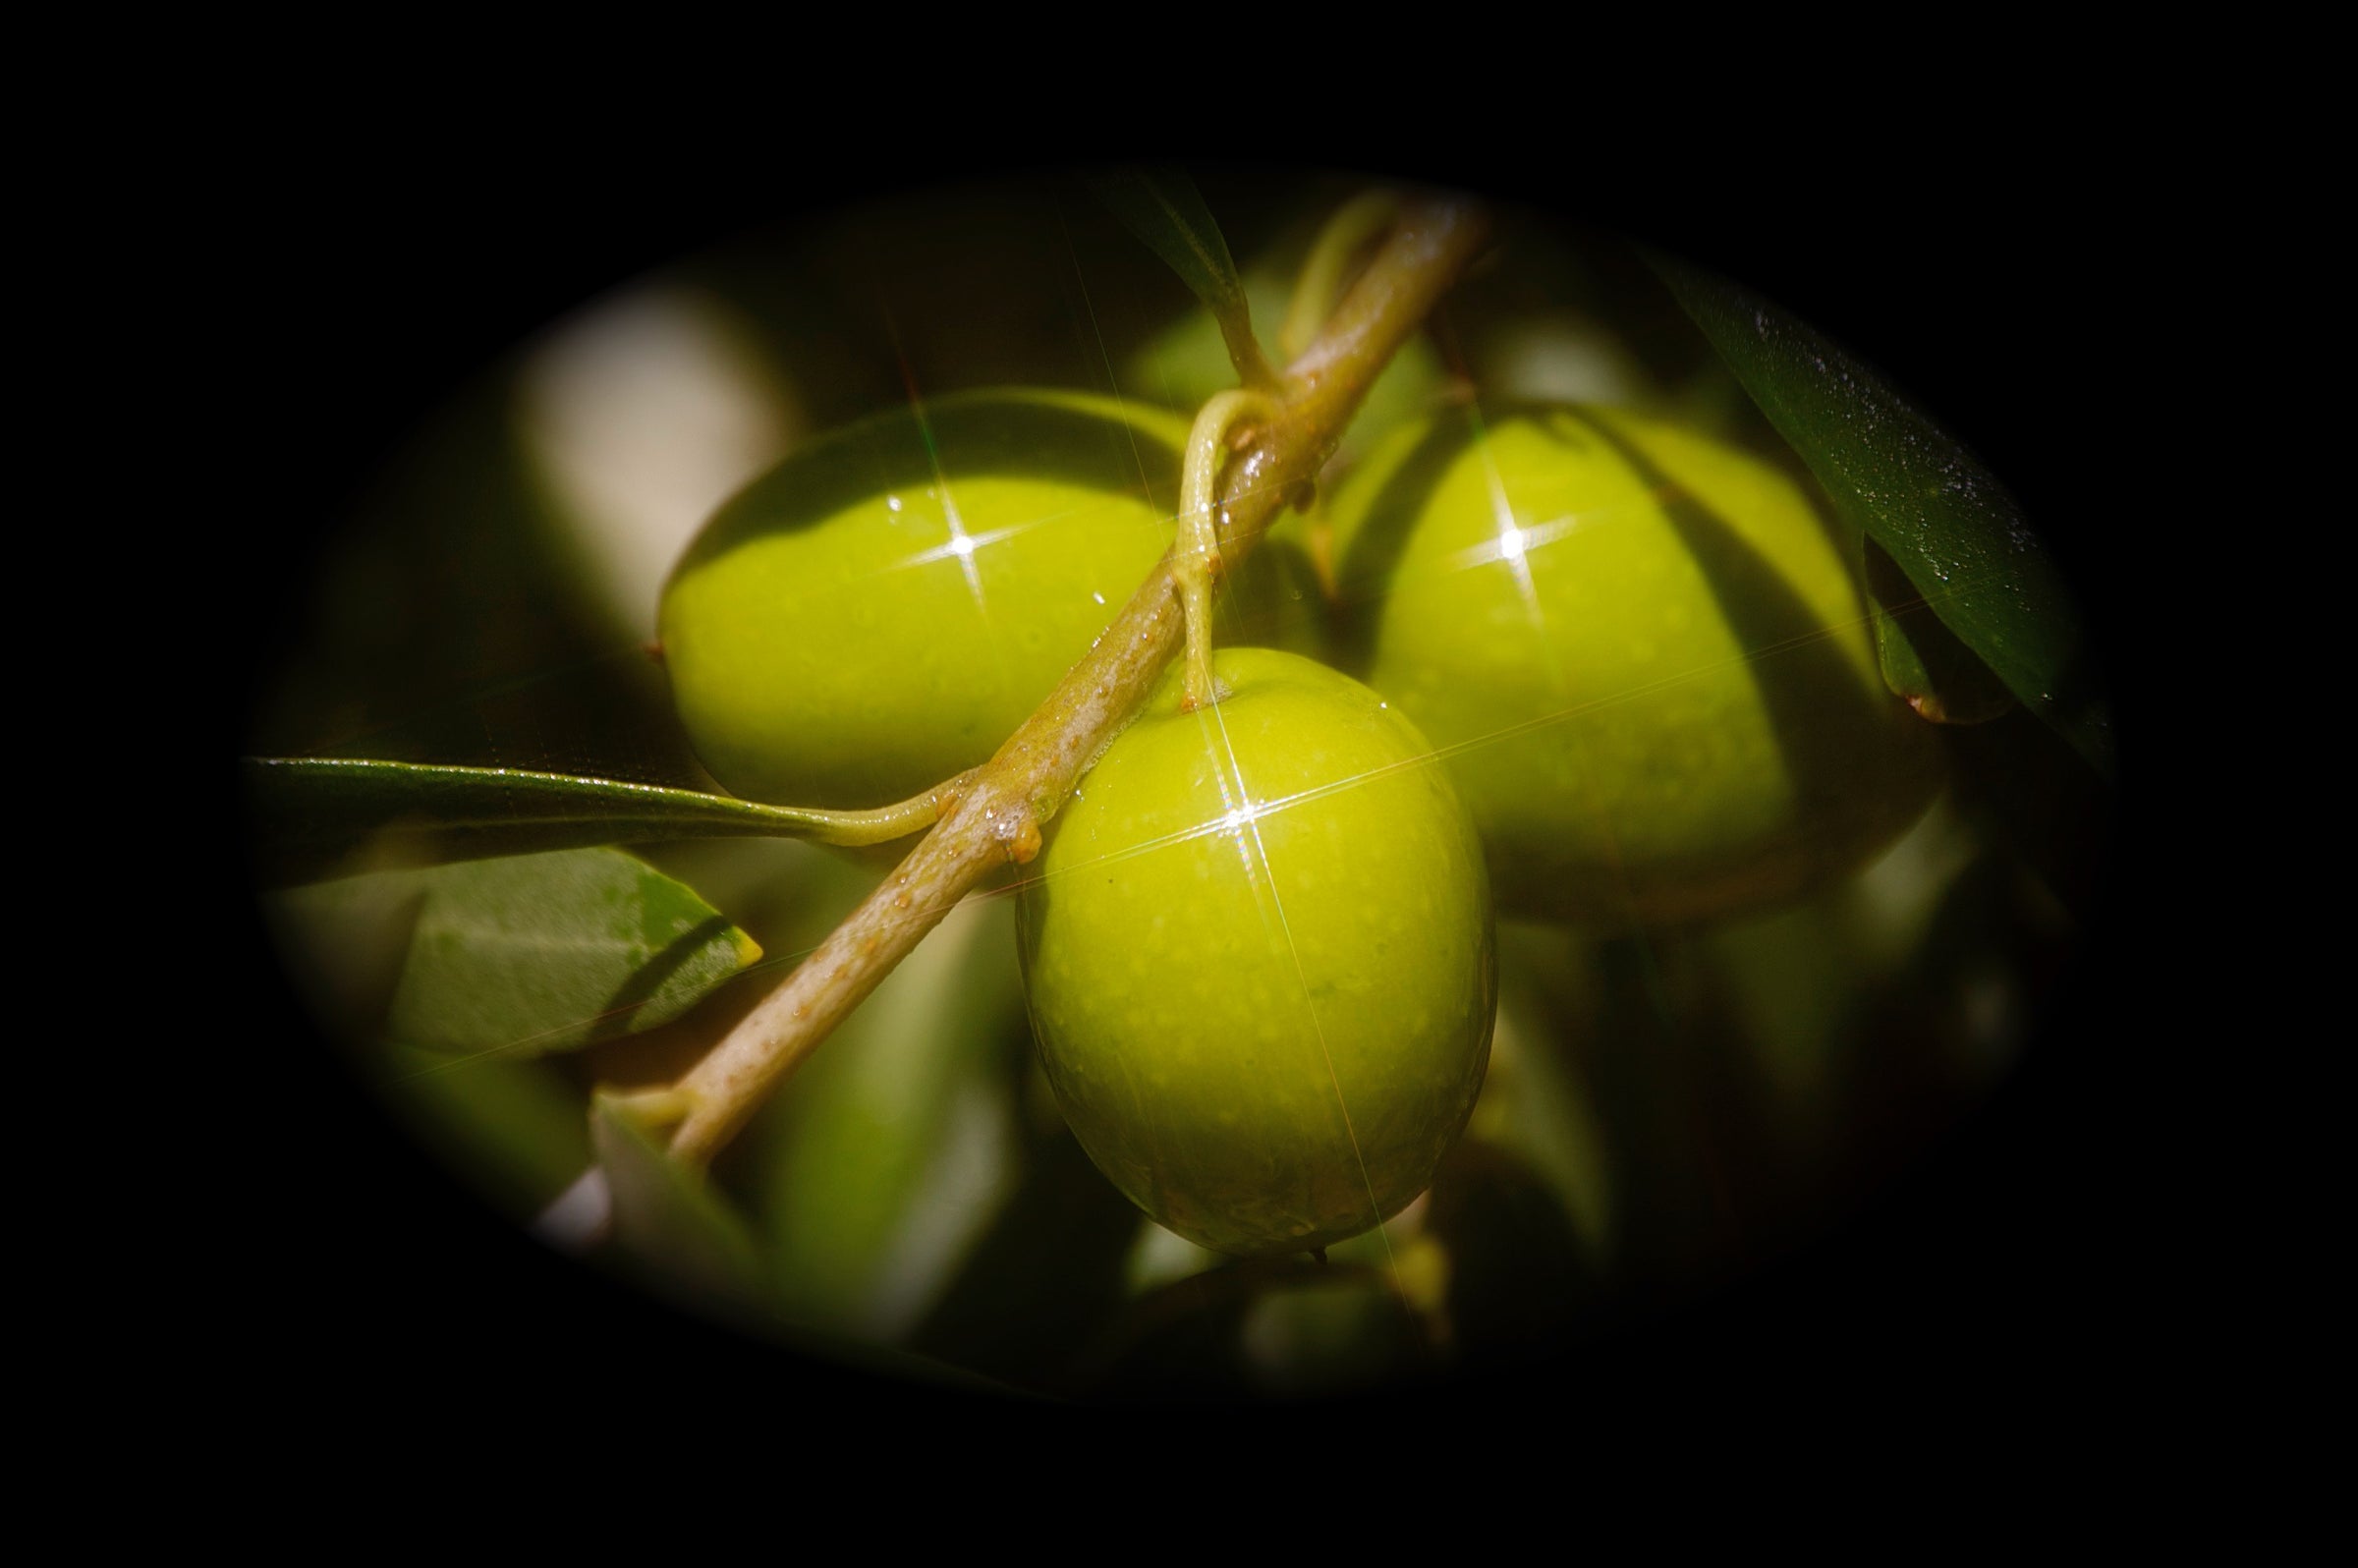 Green Ripe Olives – Olive Pit